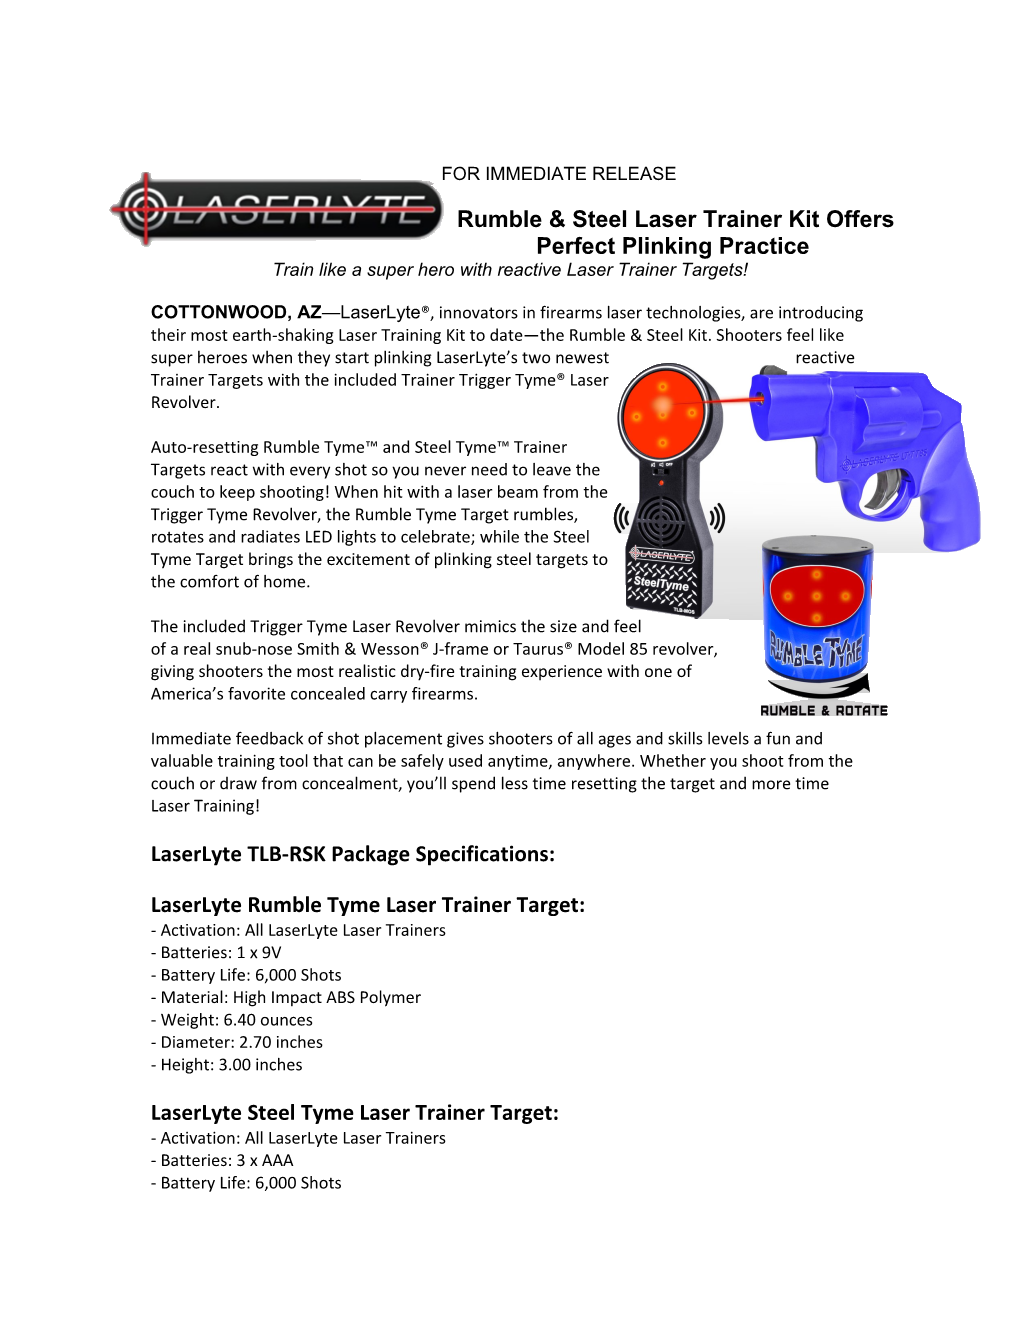 Rumble & Steel Laser Trainer Kit Offers Perfectplinking Practice